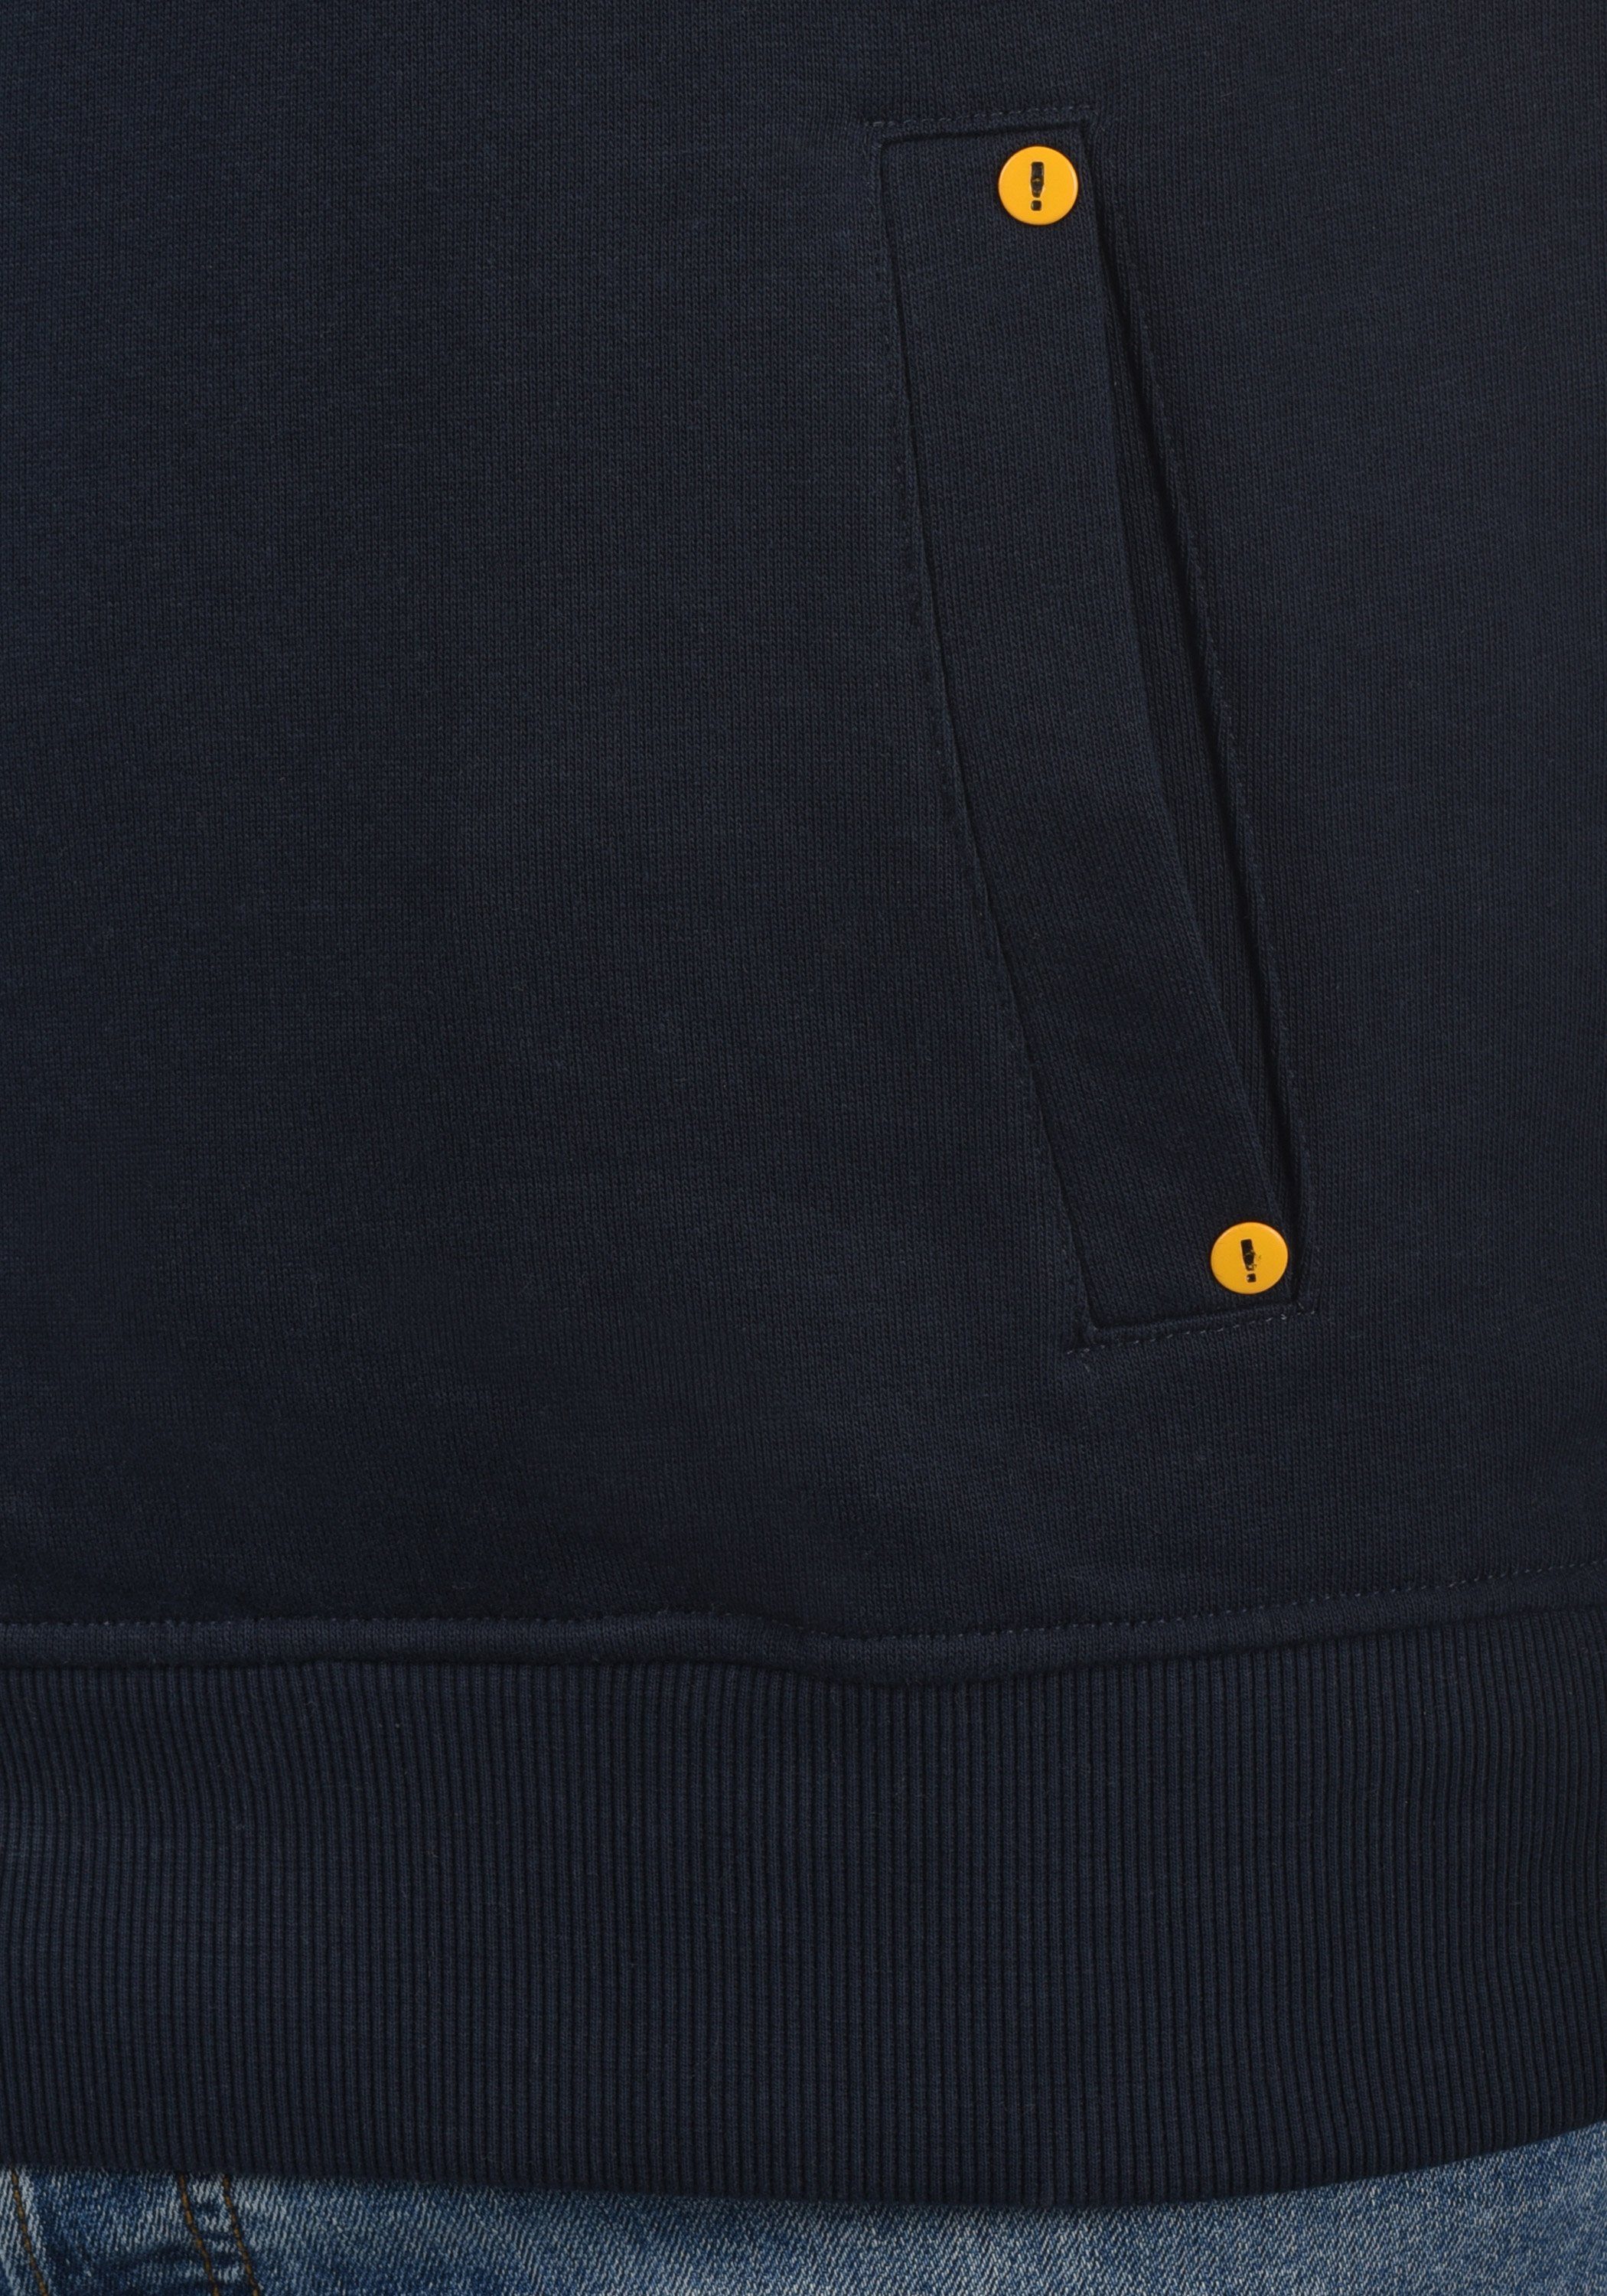 Blue (194010) kontrastreichen mit SDKaan !Solid Insignia farblichen Details Kapuzenpullover Sweatshirt